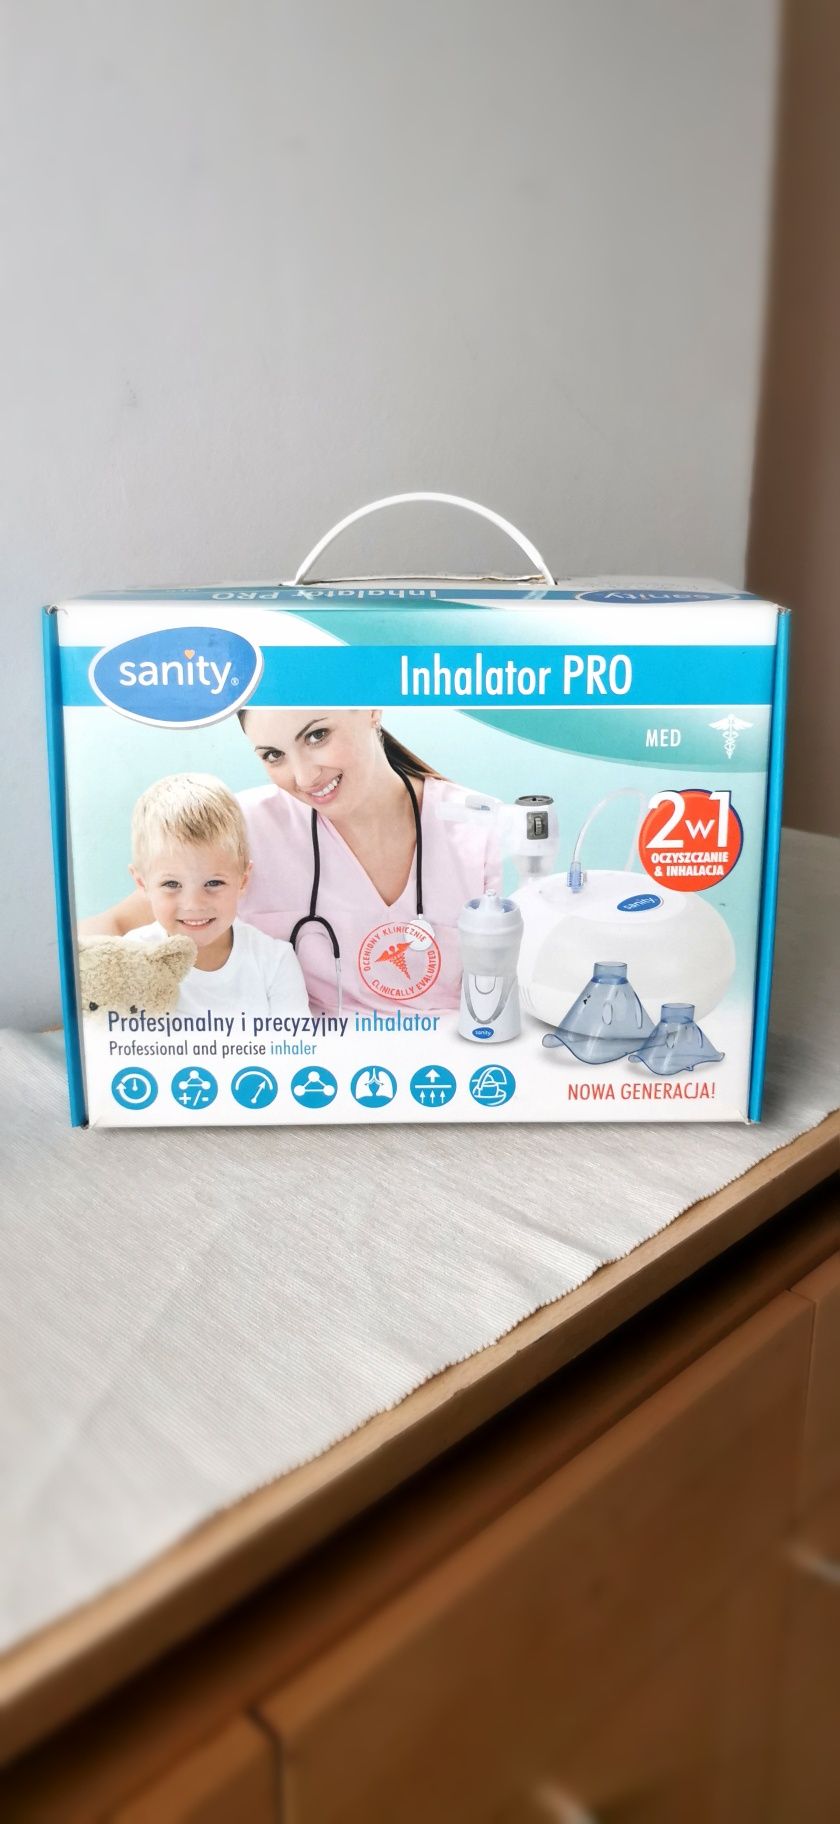 Inhalator PRO Sanity (okazja!)